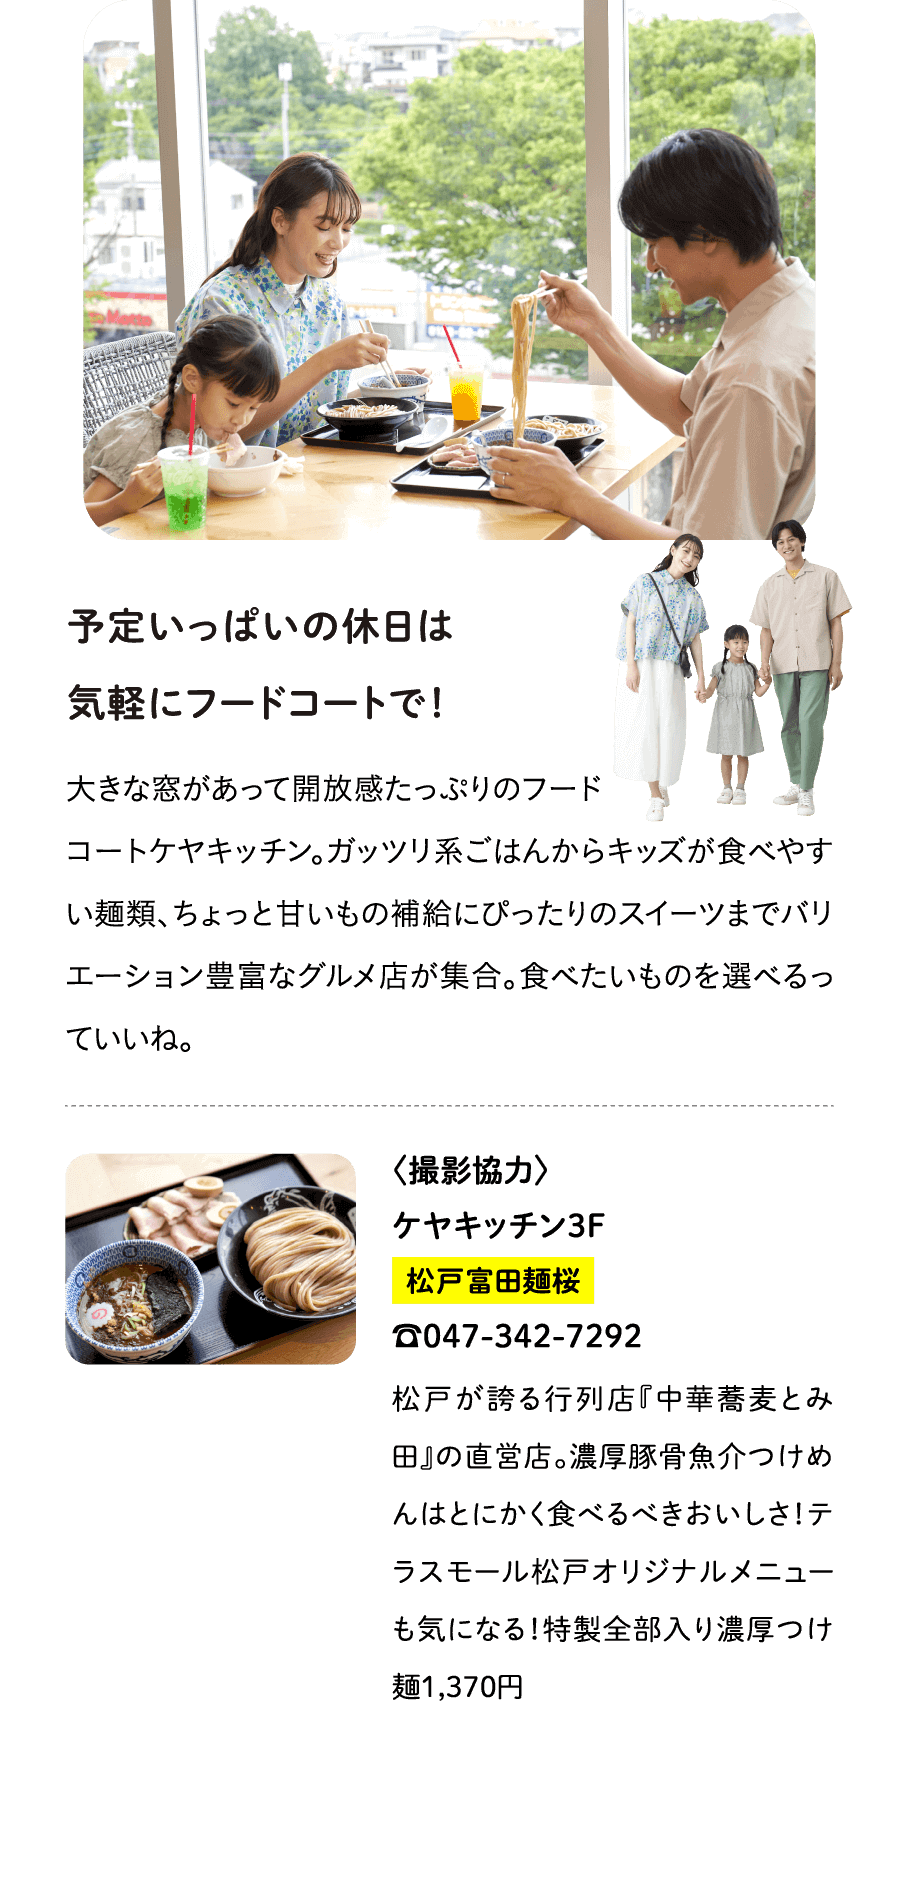 予定いっぱいの休日は気軽にフードコートで！大きな窓があって開放感たっぷりのフードコートケヤキッチン。ガッツリ系ごはんからキッズが食べやすい麺類、ちょっと甘いもの補給にぴったりのスイーツまでバリエーション豊富なグルメ店が集合。食べたいものを選べるっていいね。〈撮影協力〉ケヤキッチン３F松戸富田麺桜☎047-342-7292松戸が誇る行列店『中華蕎麦とみ田』の直営店。濃厚豚骨魚介つけめんはとにかく食べるべきおいしさ！テラスモール松戸オリジナルメニューも気になる！特製全部入り濃厚つけ麺1,370円